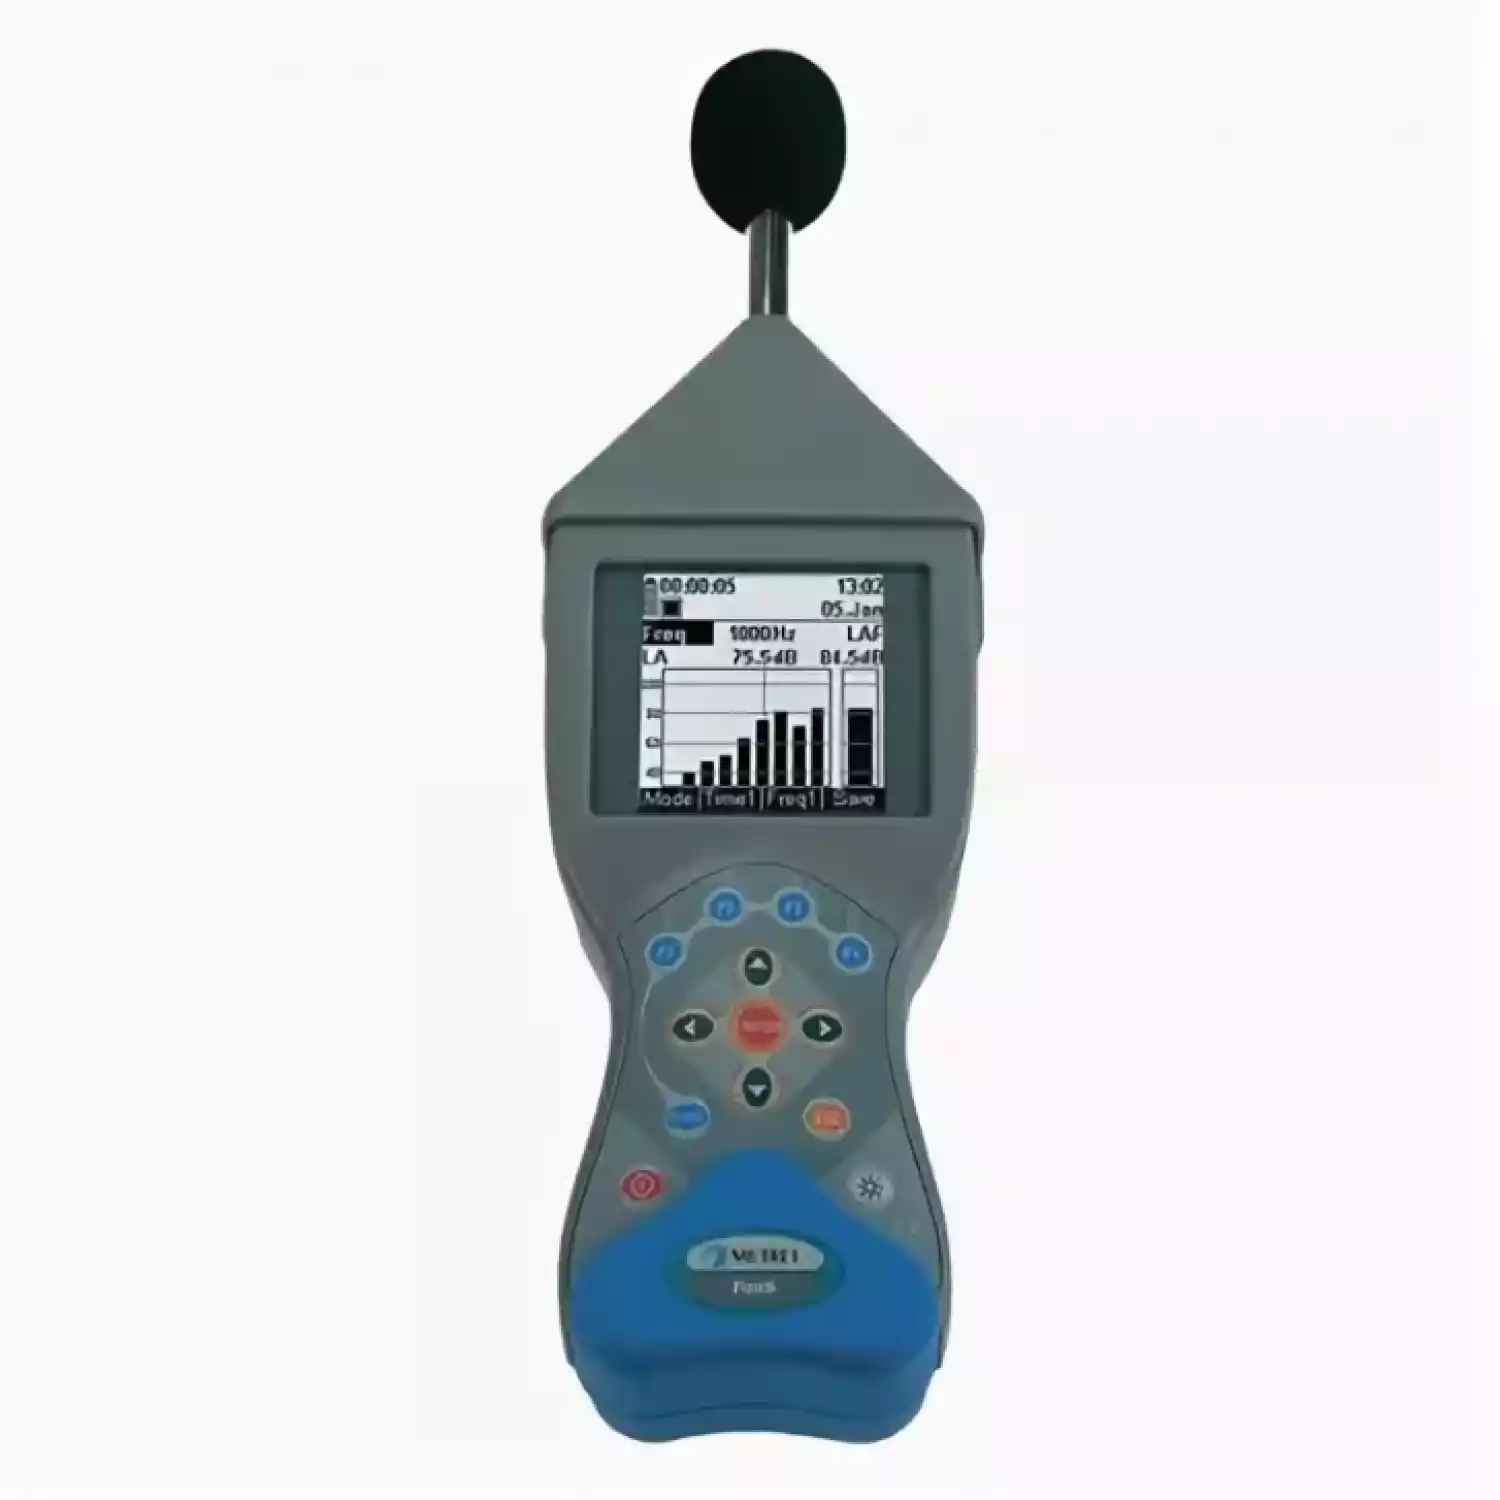 MI 6301 FonS цифровой измеритель уровня звука - 4